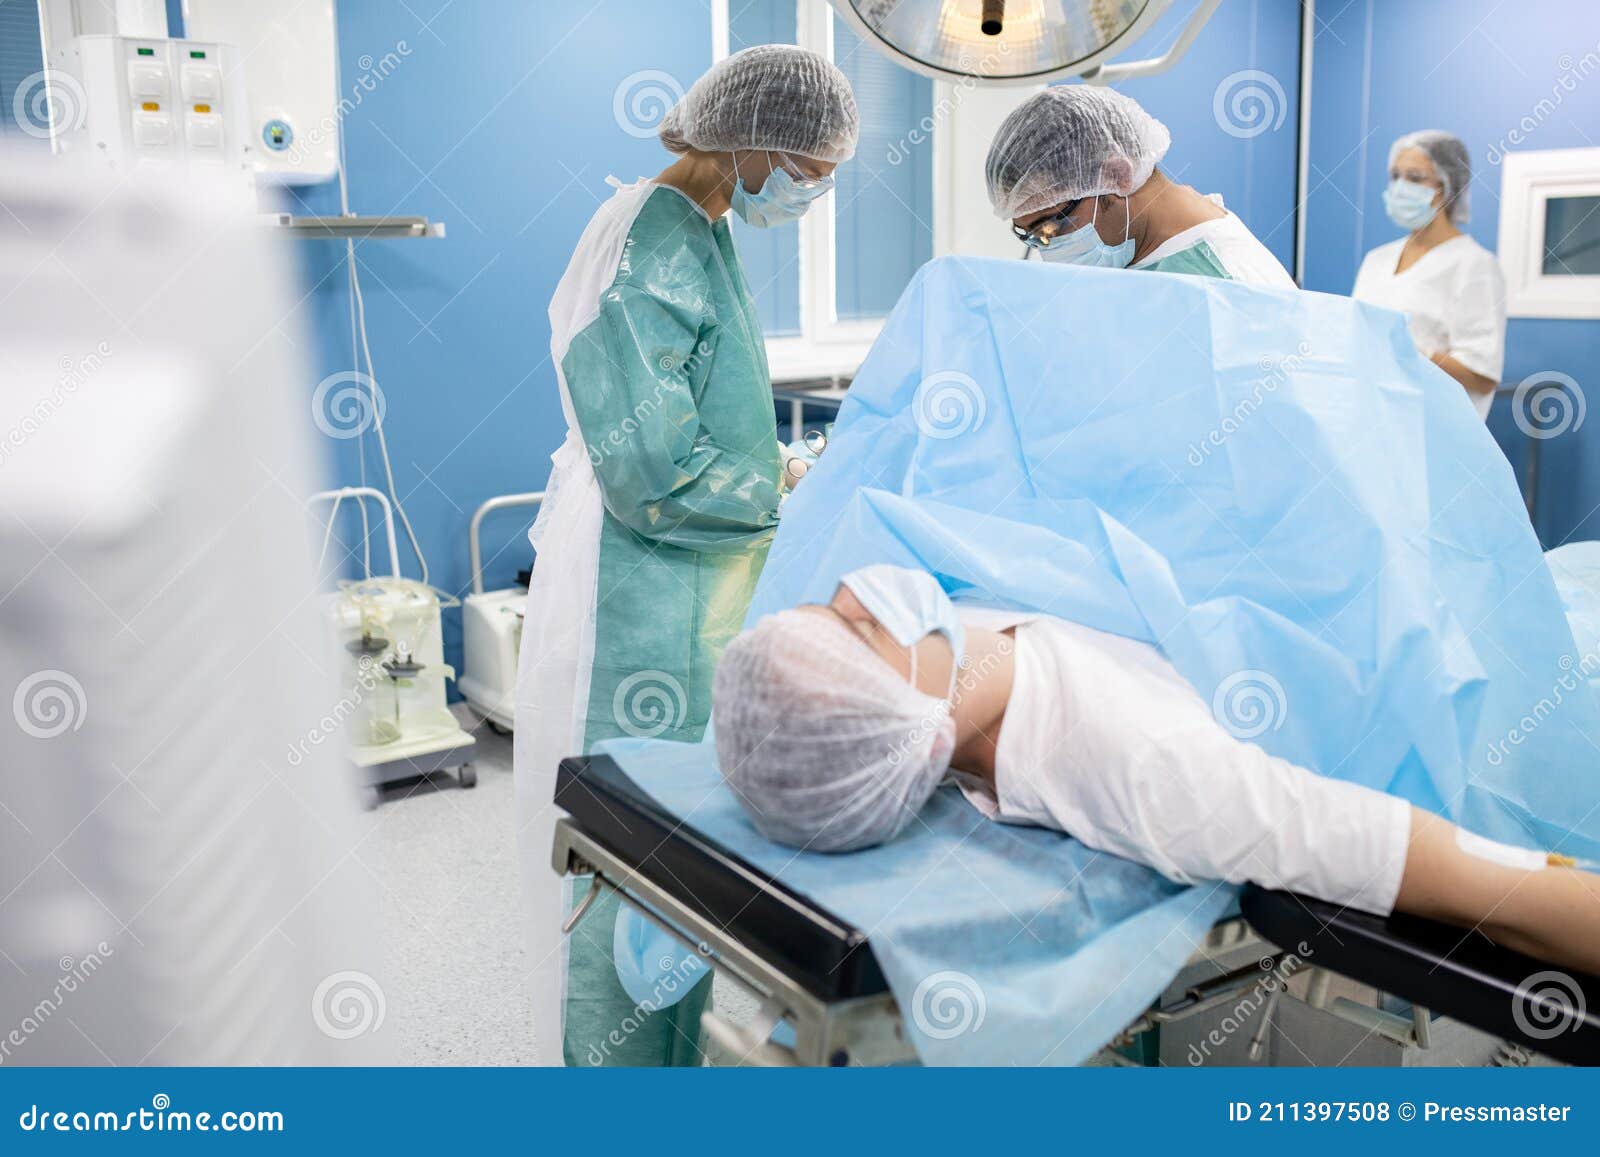 Подготовка хирурга к операции. Женщина на операционном столе. Девушка лежит на операционном столе. Операционный стол.